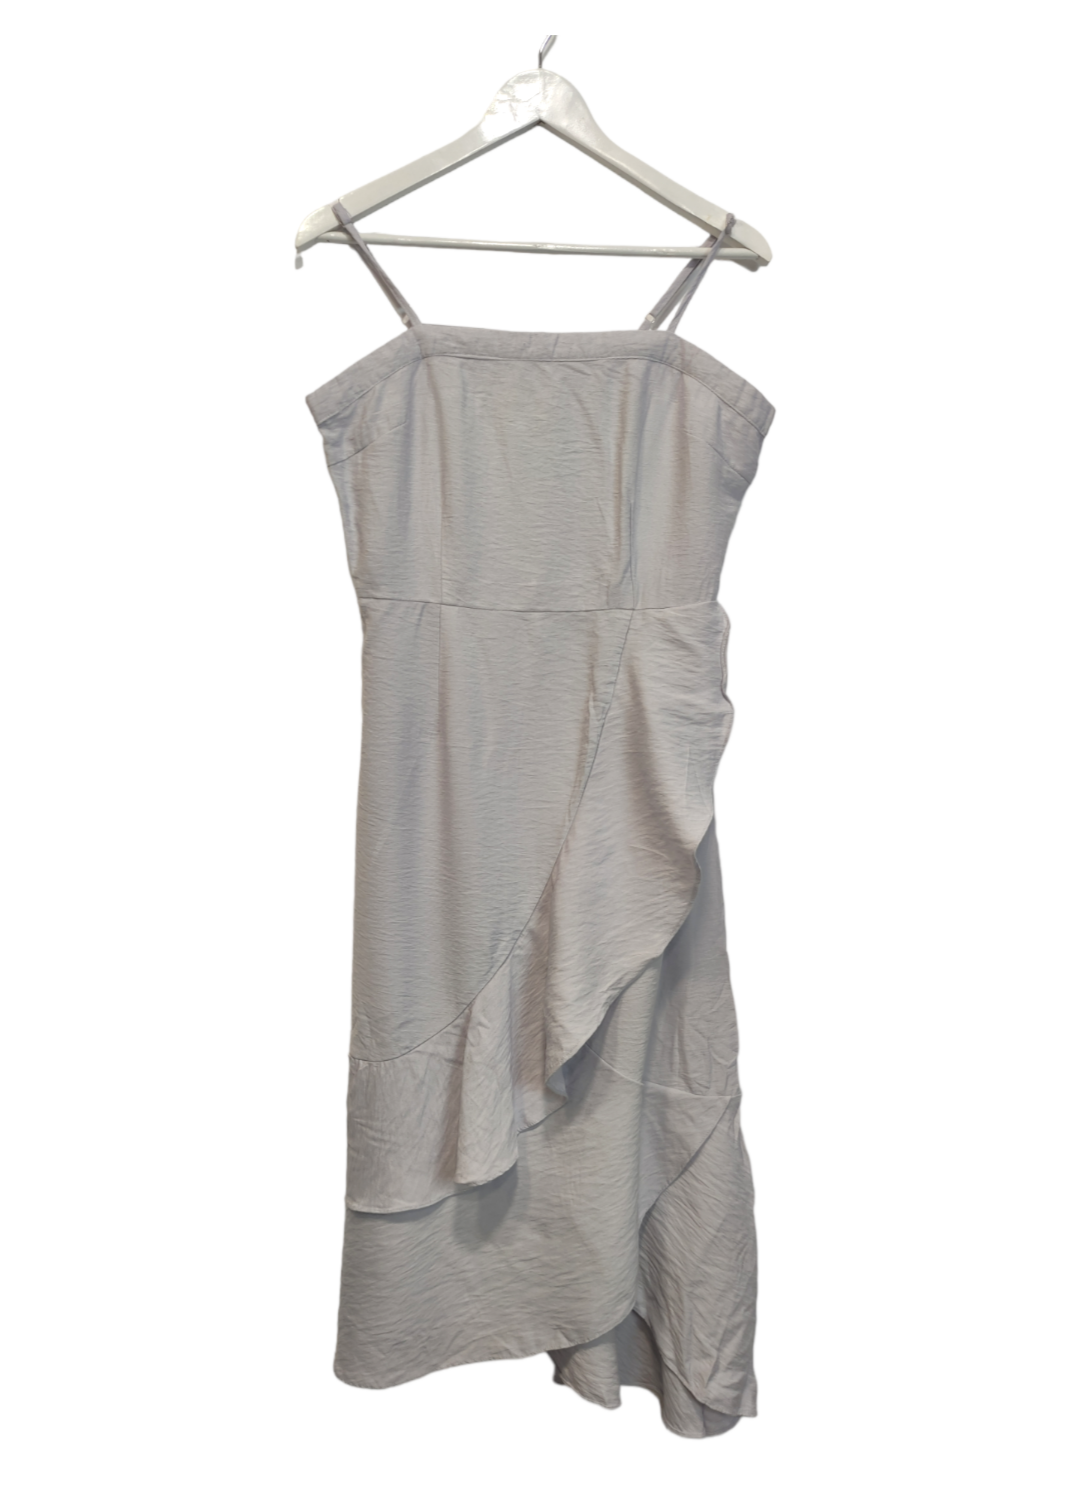 Φόρεμα ZALORA με Τιράντες, σε ανοιχτό Γκρι-Σιέλ χρώμα (M/L)